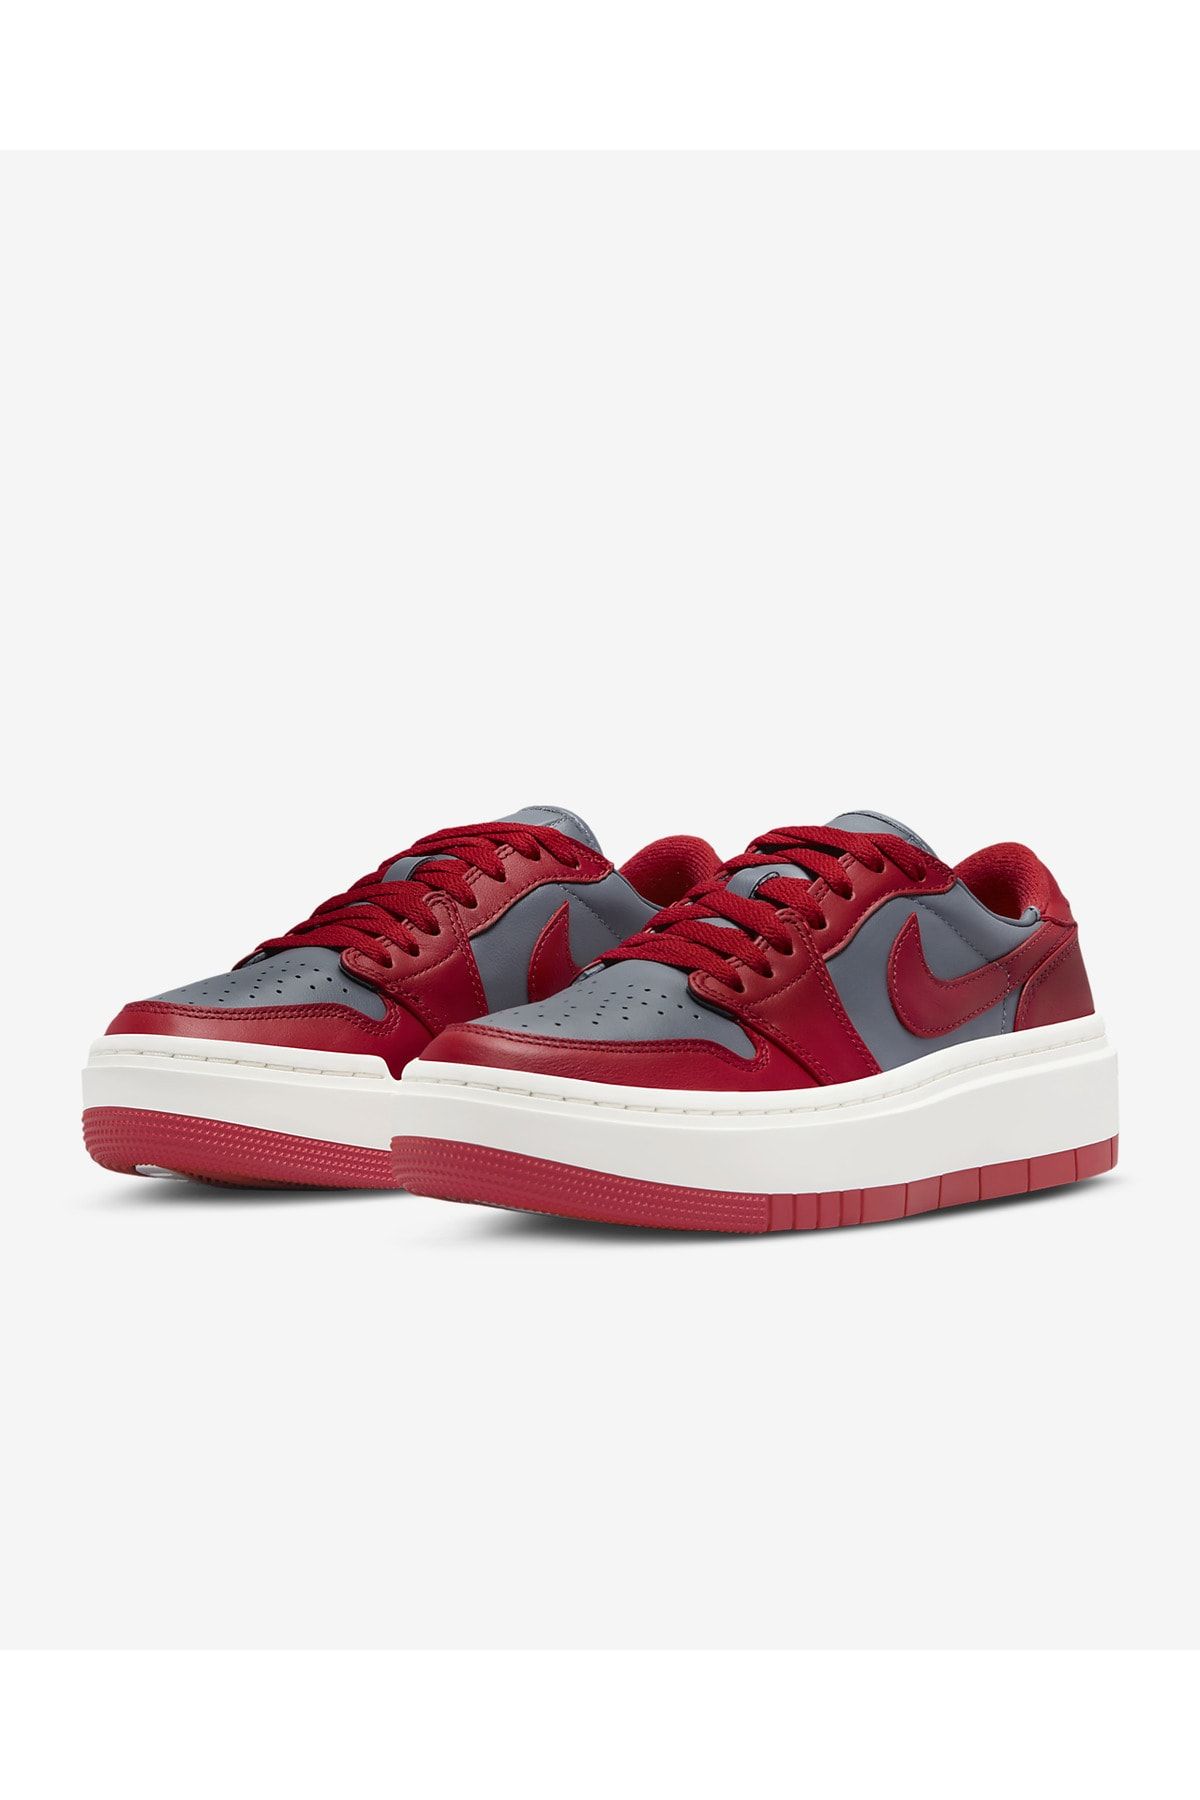 Nike Air Jordan 1 Low Elevate Dark Grey Varsity Red